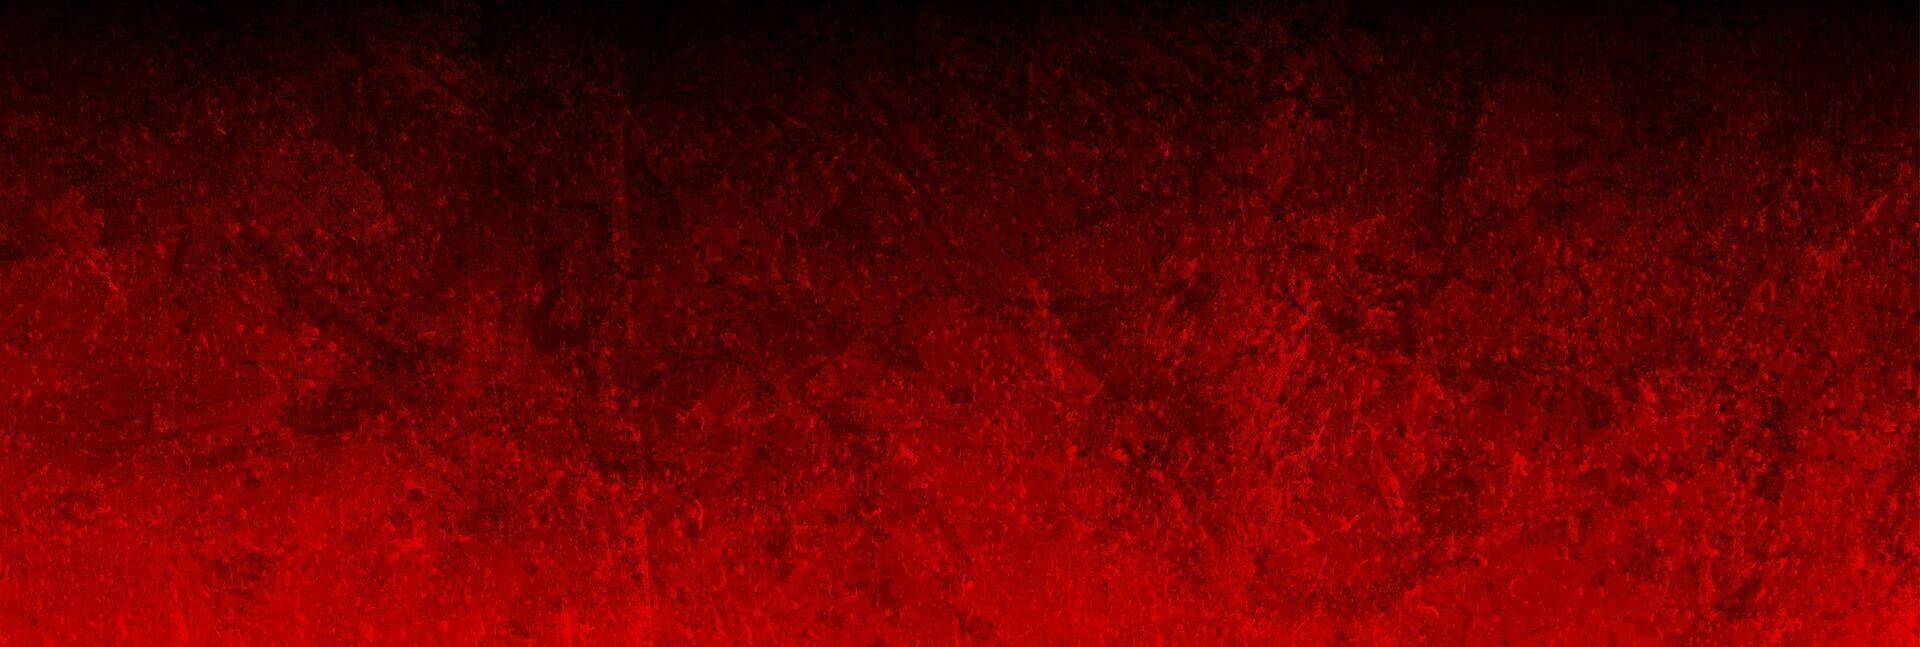 Dark red grunge textural concrete wall background vector